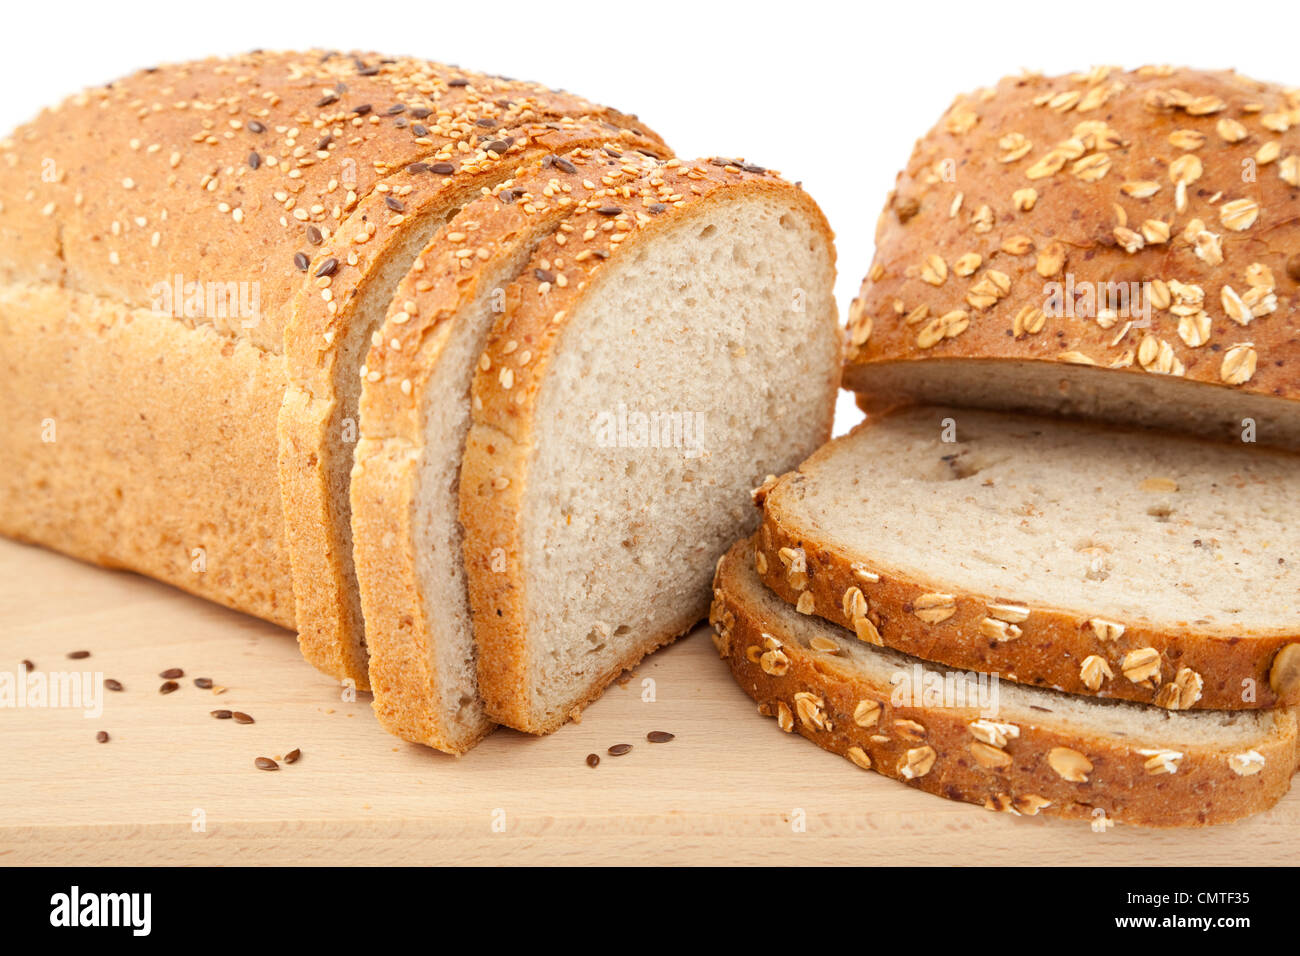 La metà del pane e la fetta di pane su sfondo bianco Foto Stock